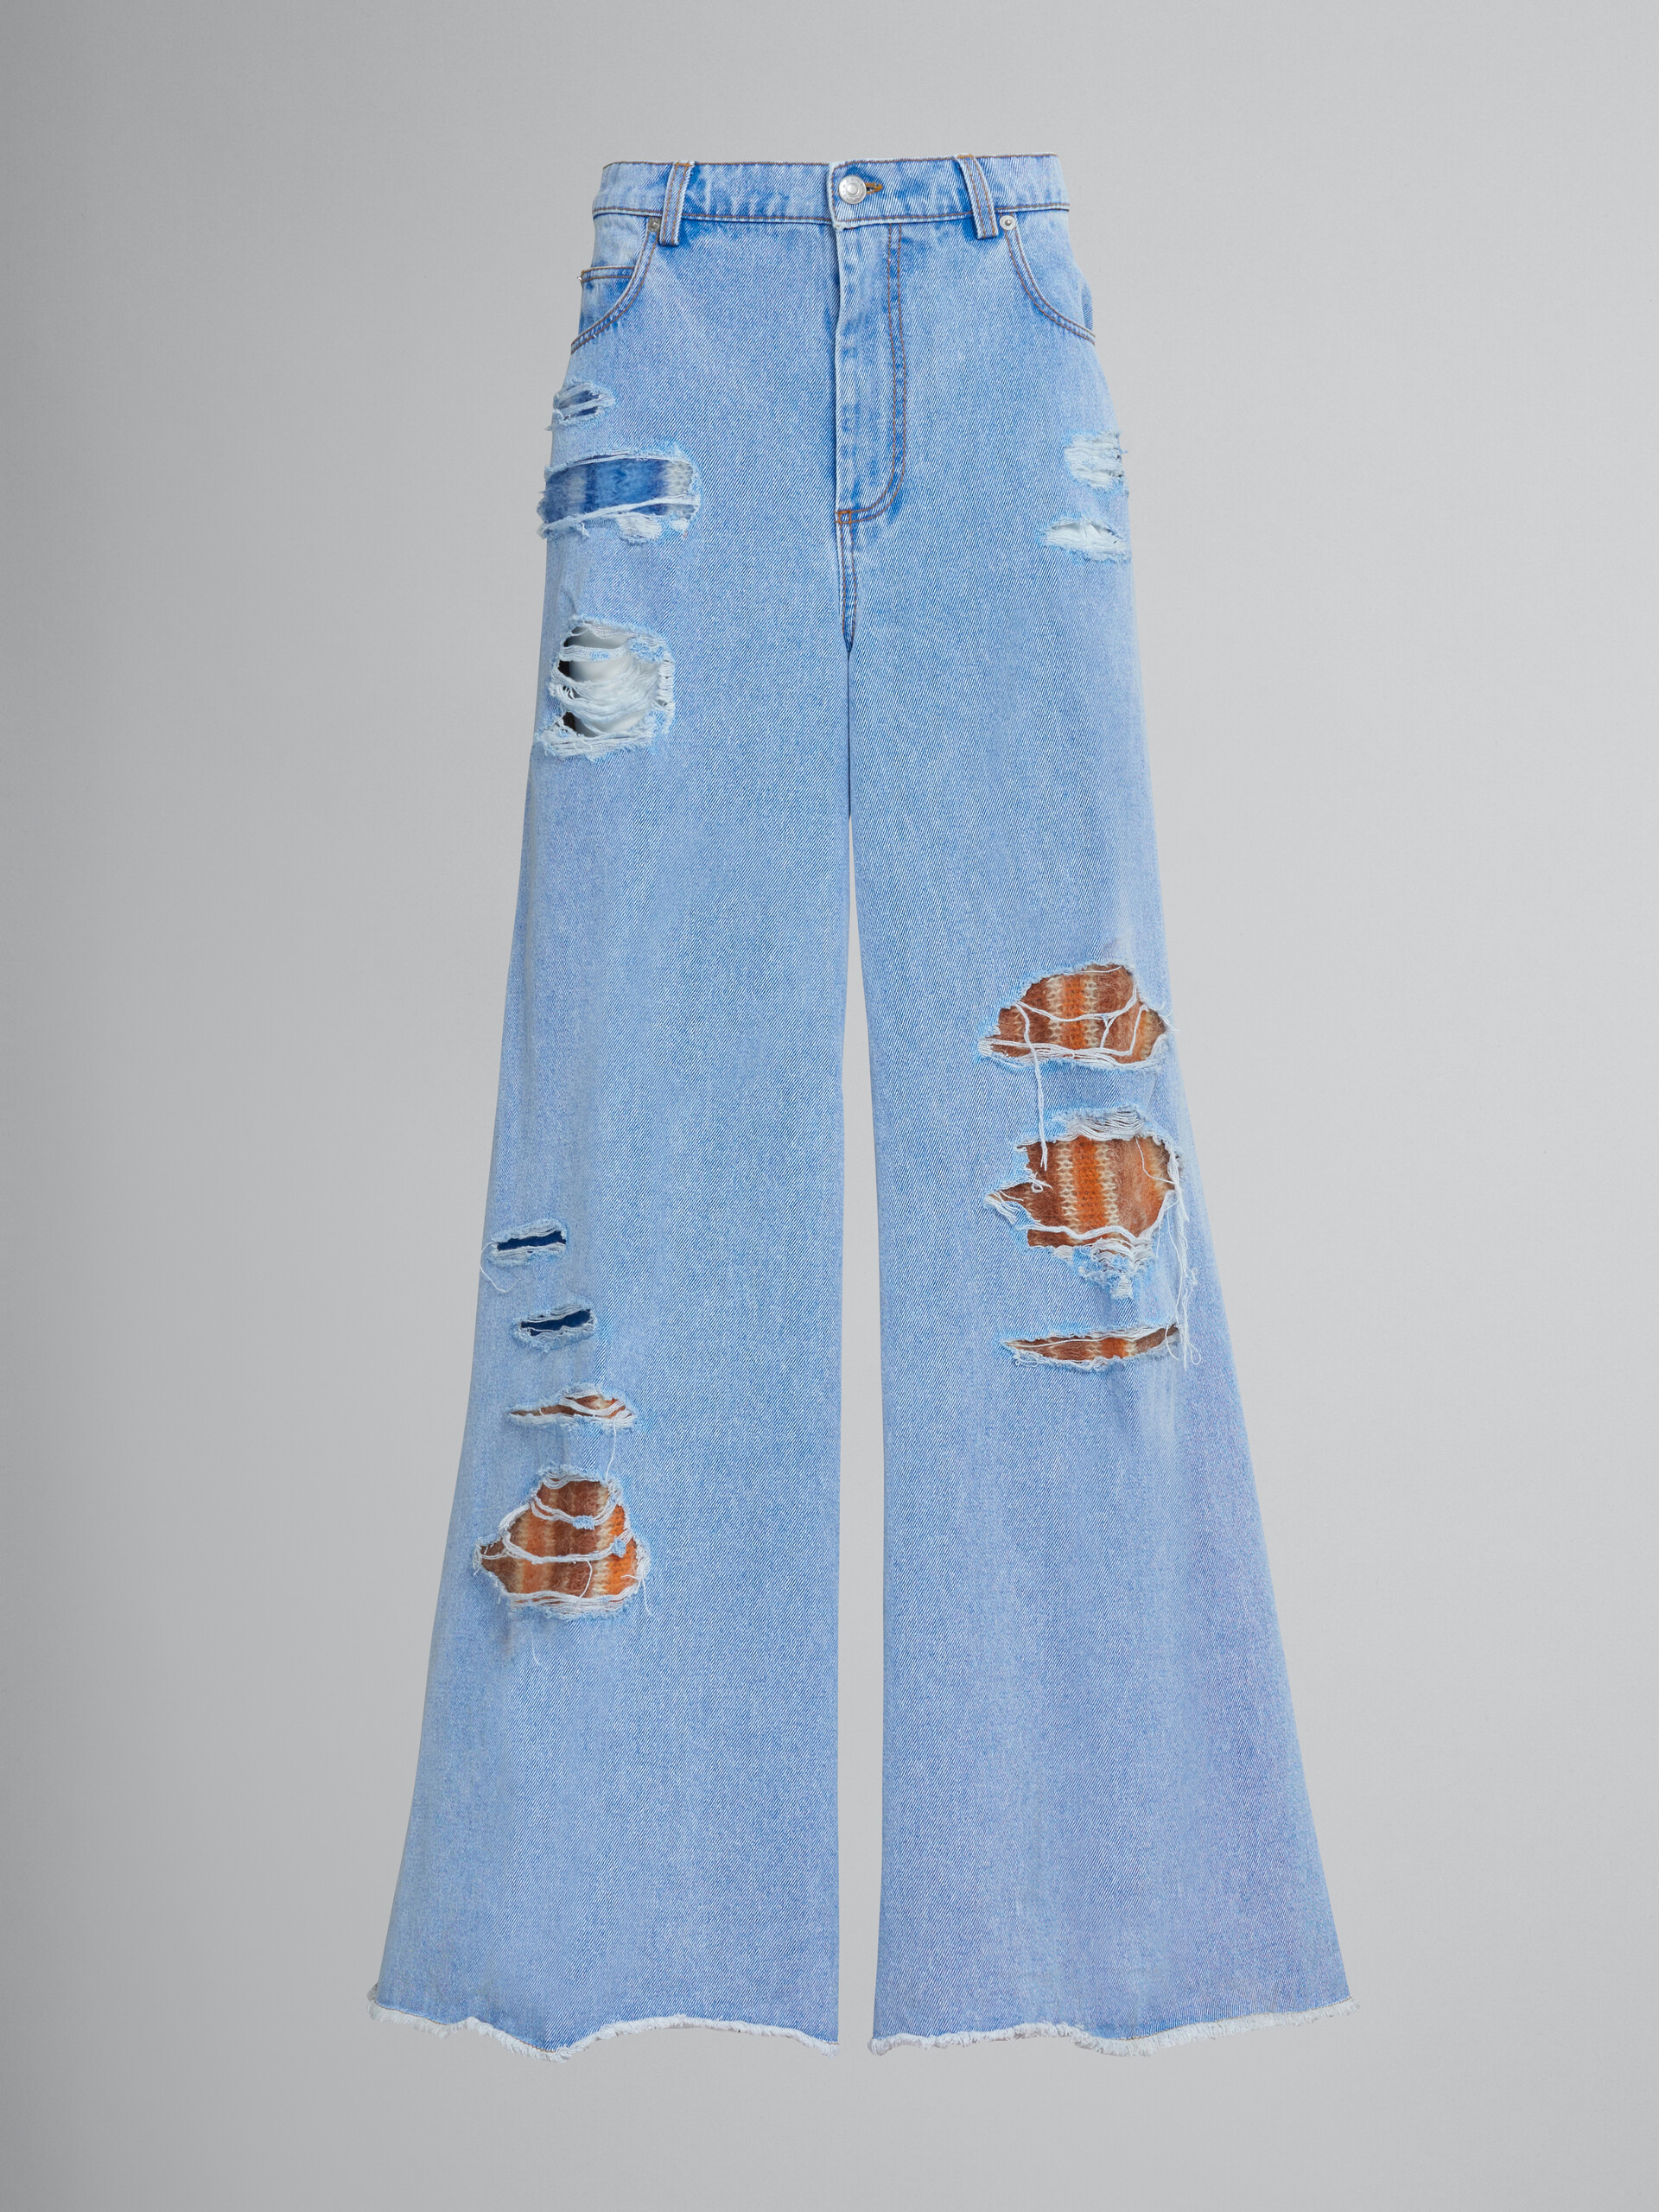 Pantaloni extra flare in denim azzurro e mohair - Pantaloni - Image 1